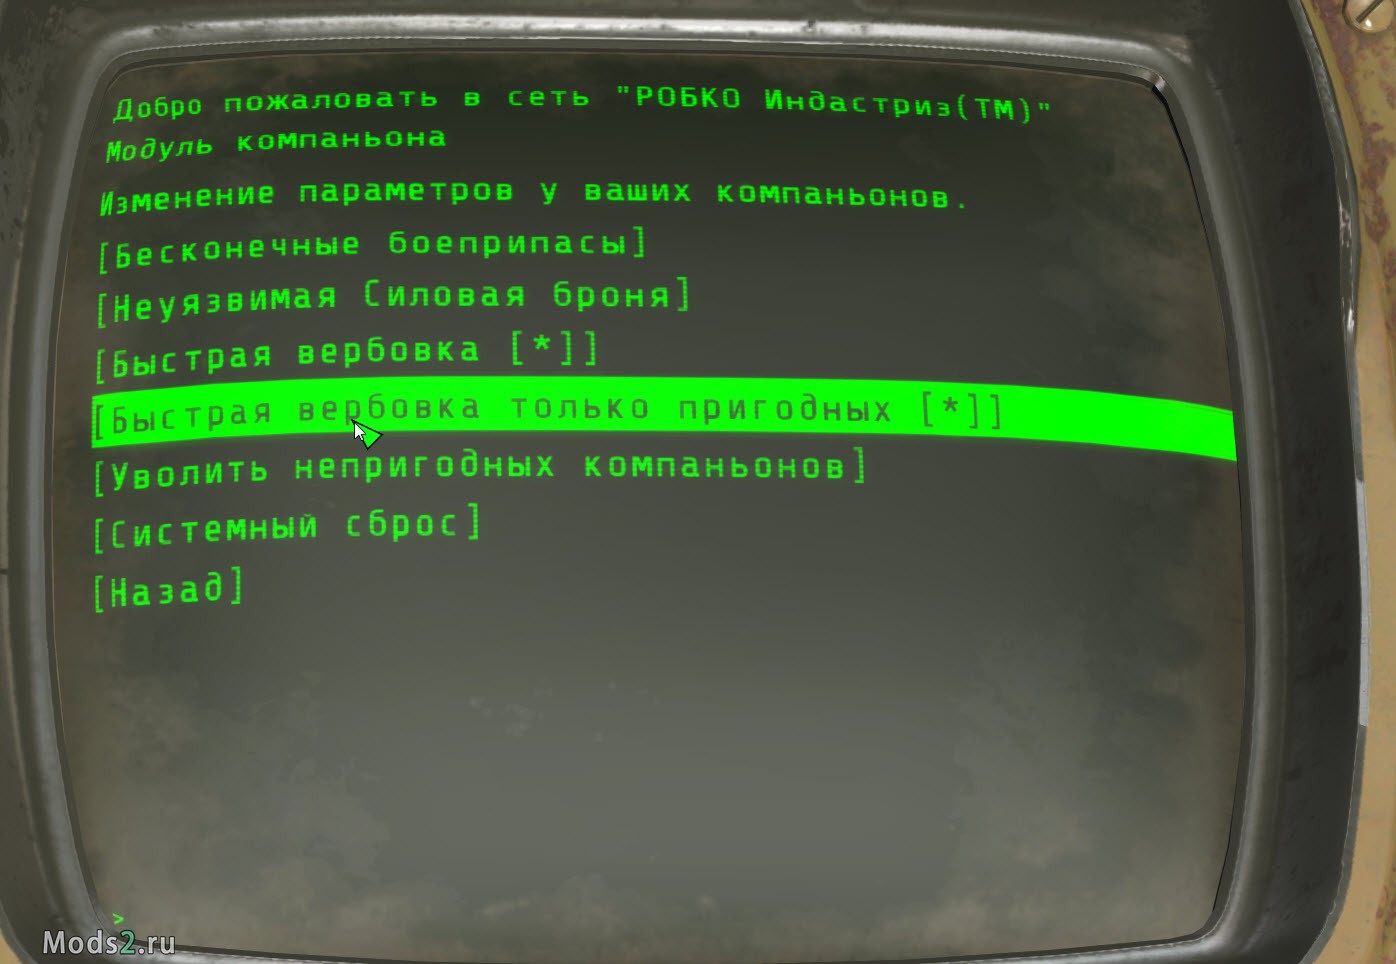 Fallout 4 сеть робко индастриз фото 45